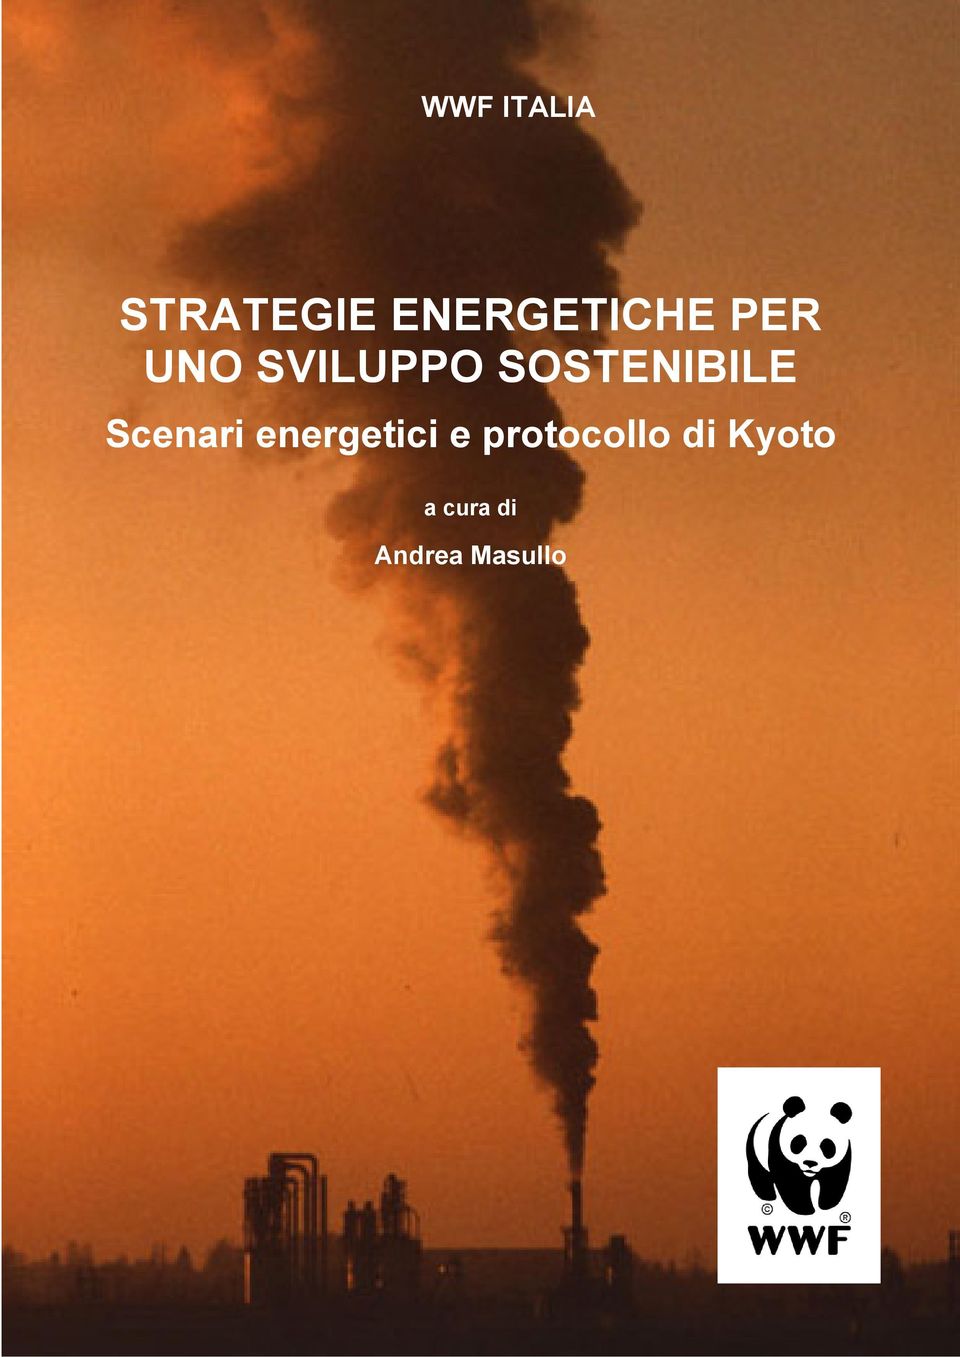 SOSTENIBILE Scenari energetici e protocollo di Kyoto Scenari